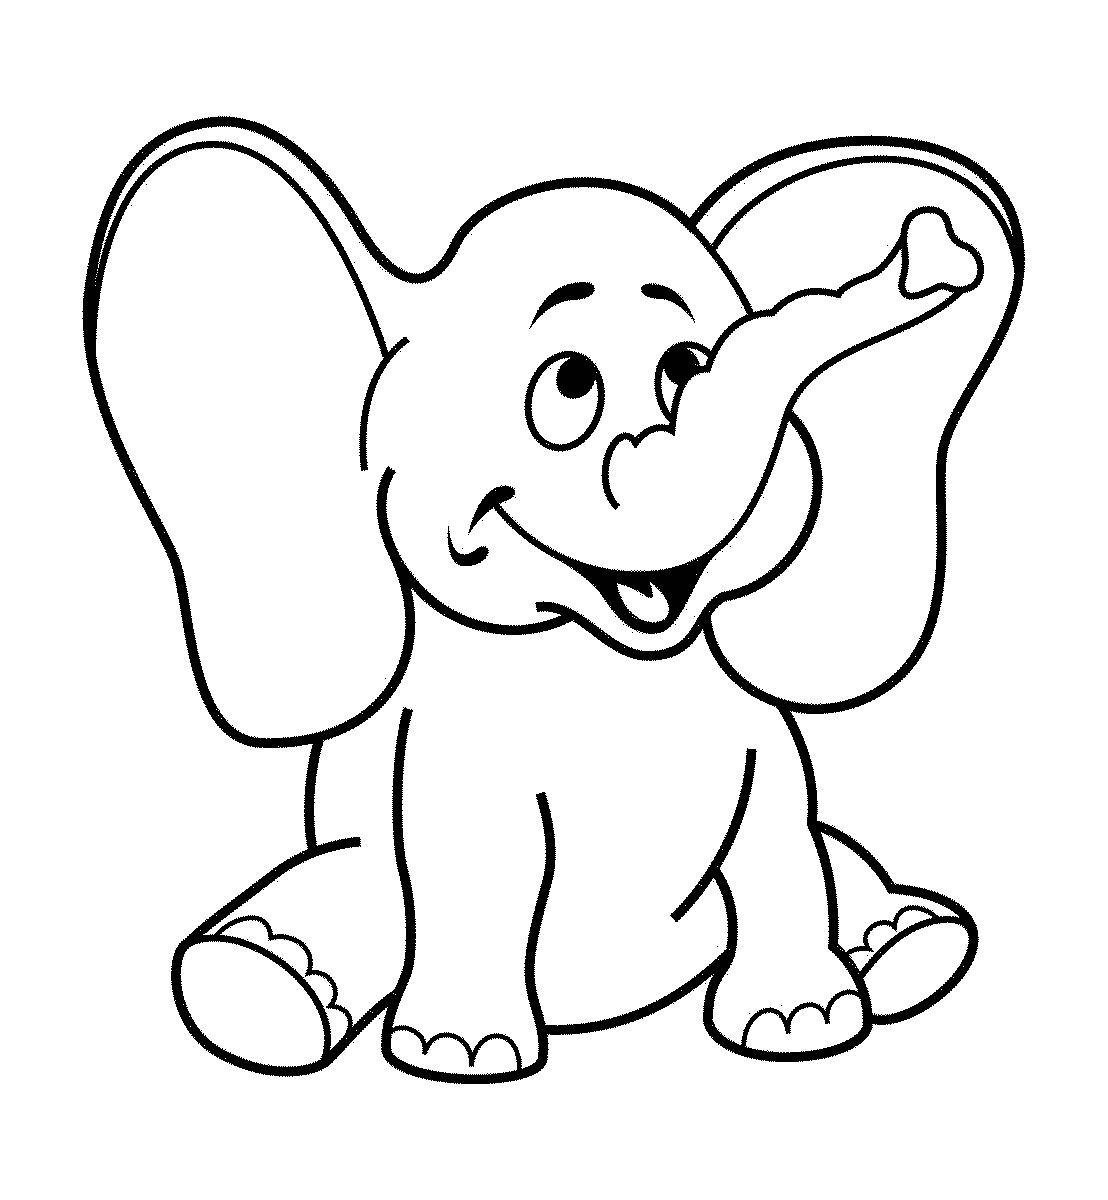 Coloring Sheets For Boys Age 5
 Dibujos de elefantes tiernos para colorear